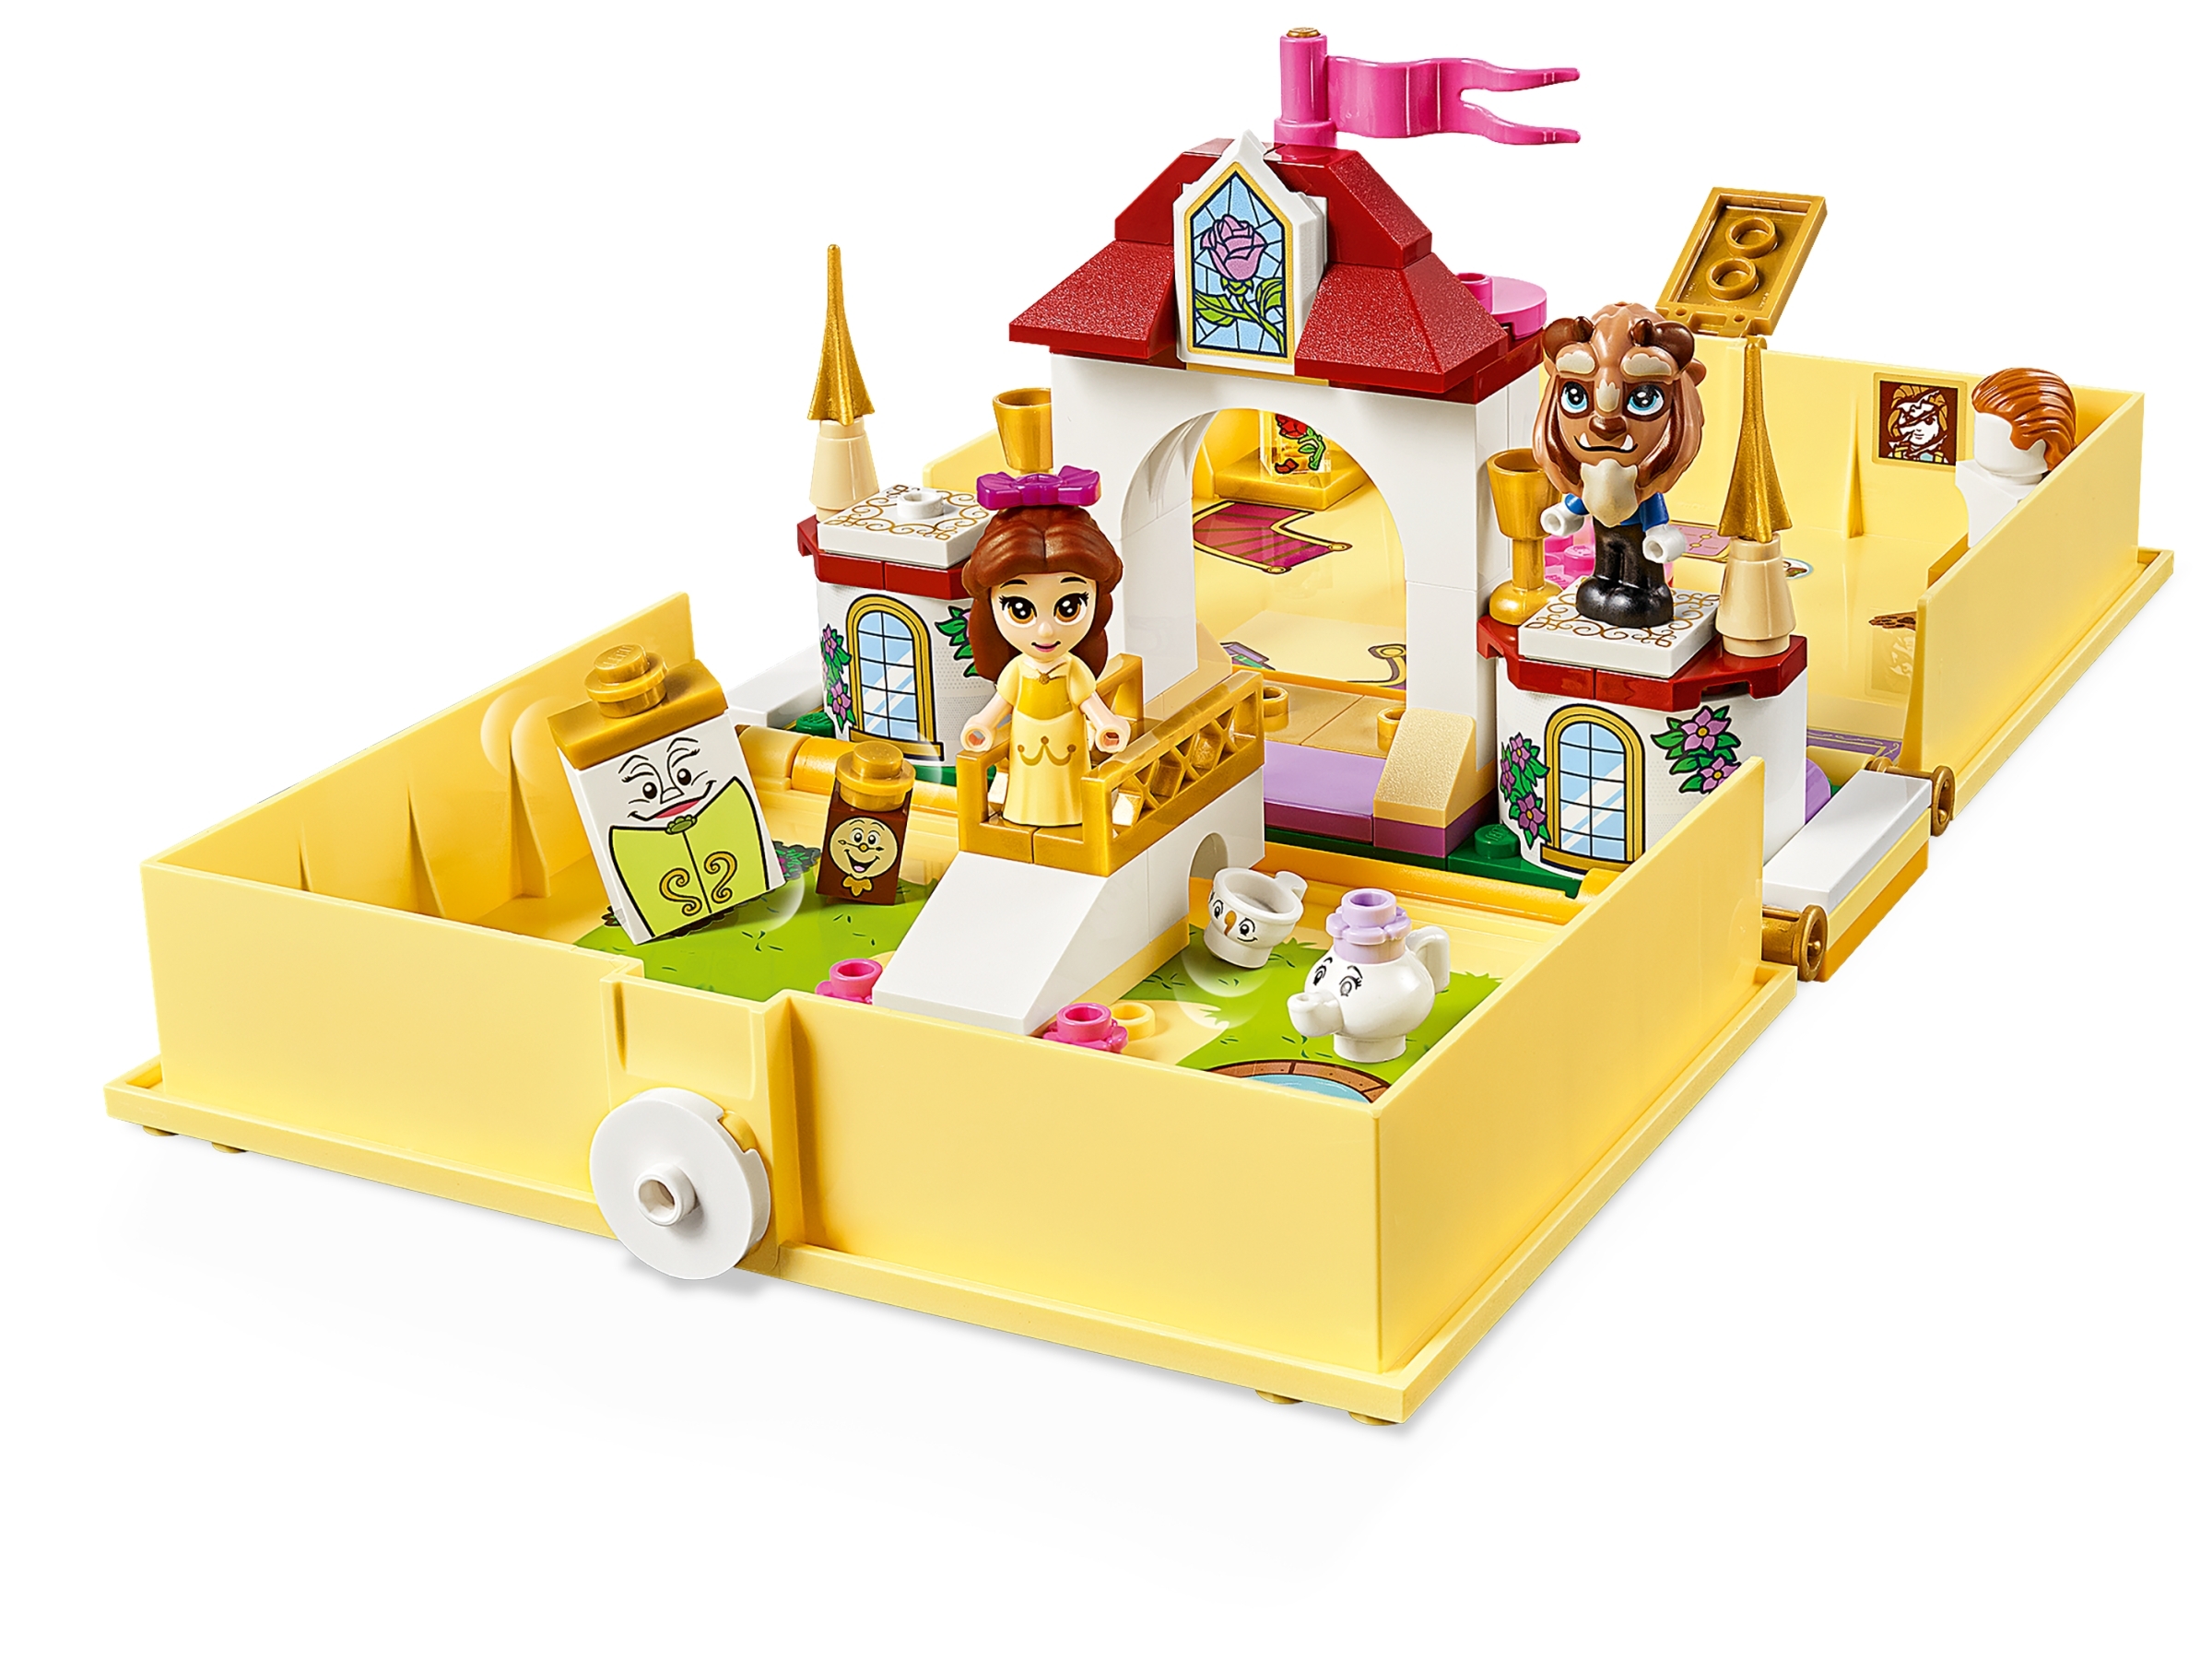 NEU & OVP 43177 Belles Märchenbuch LEGO® Disney Princess